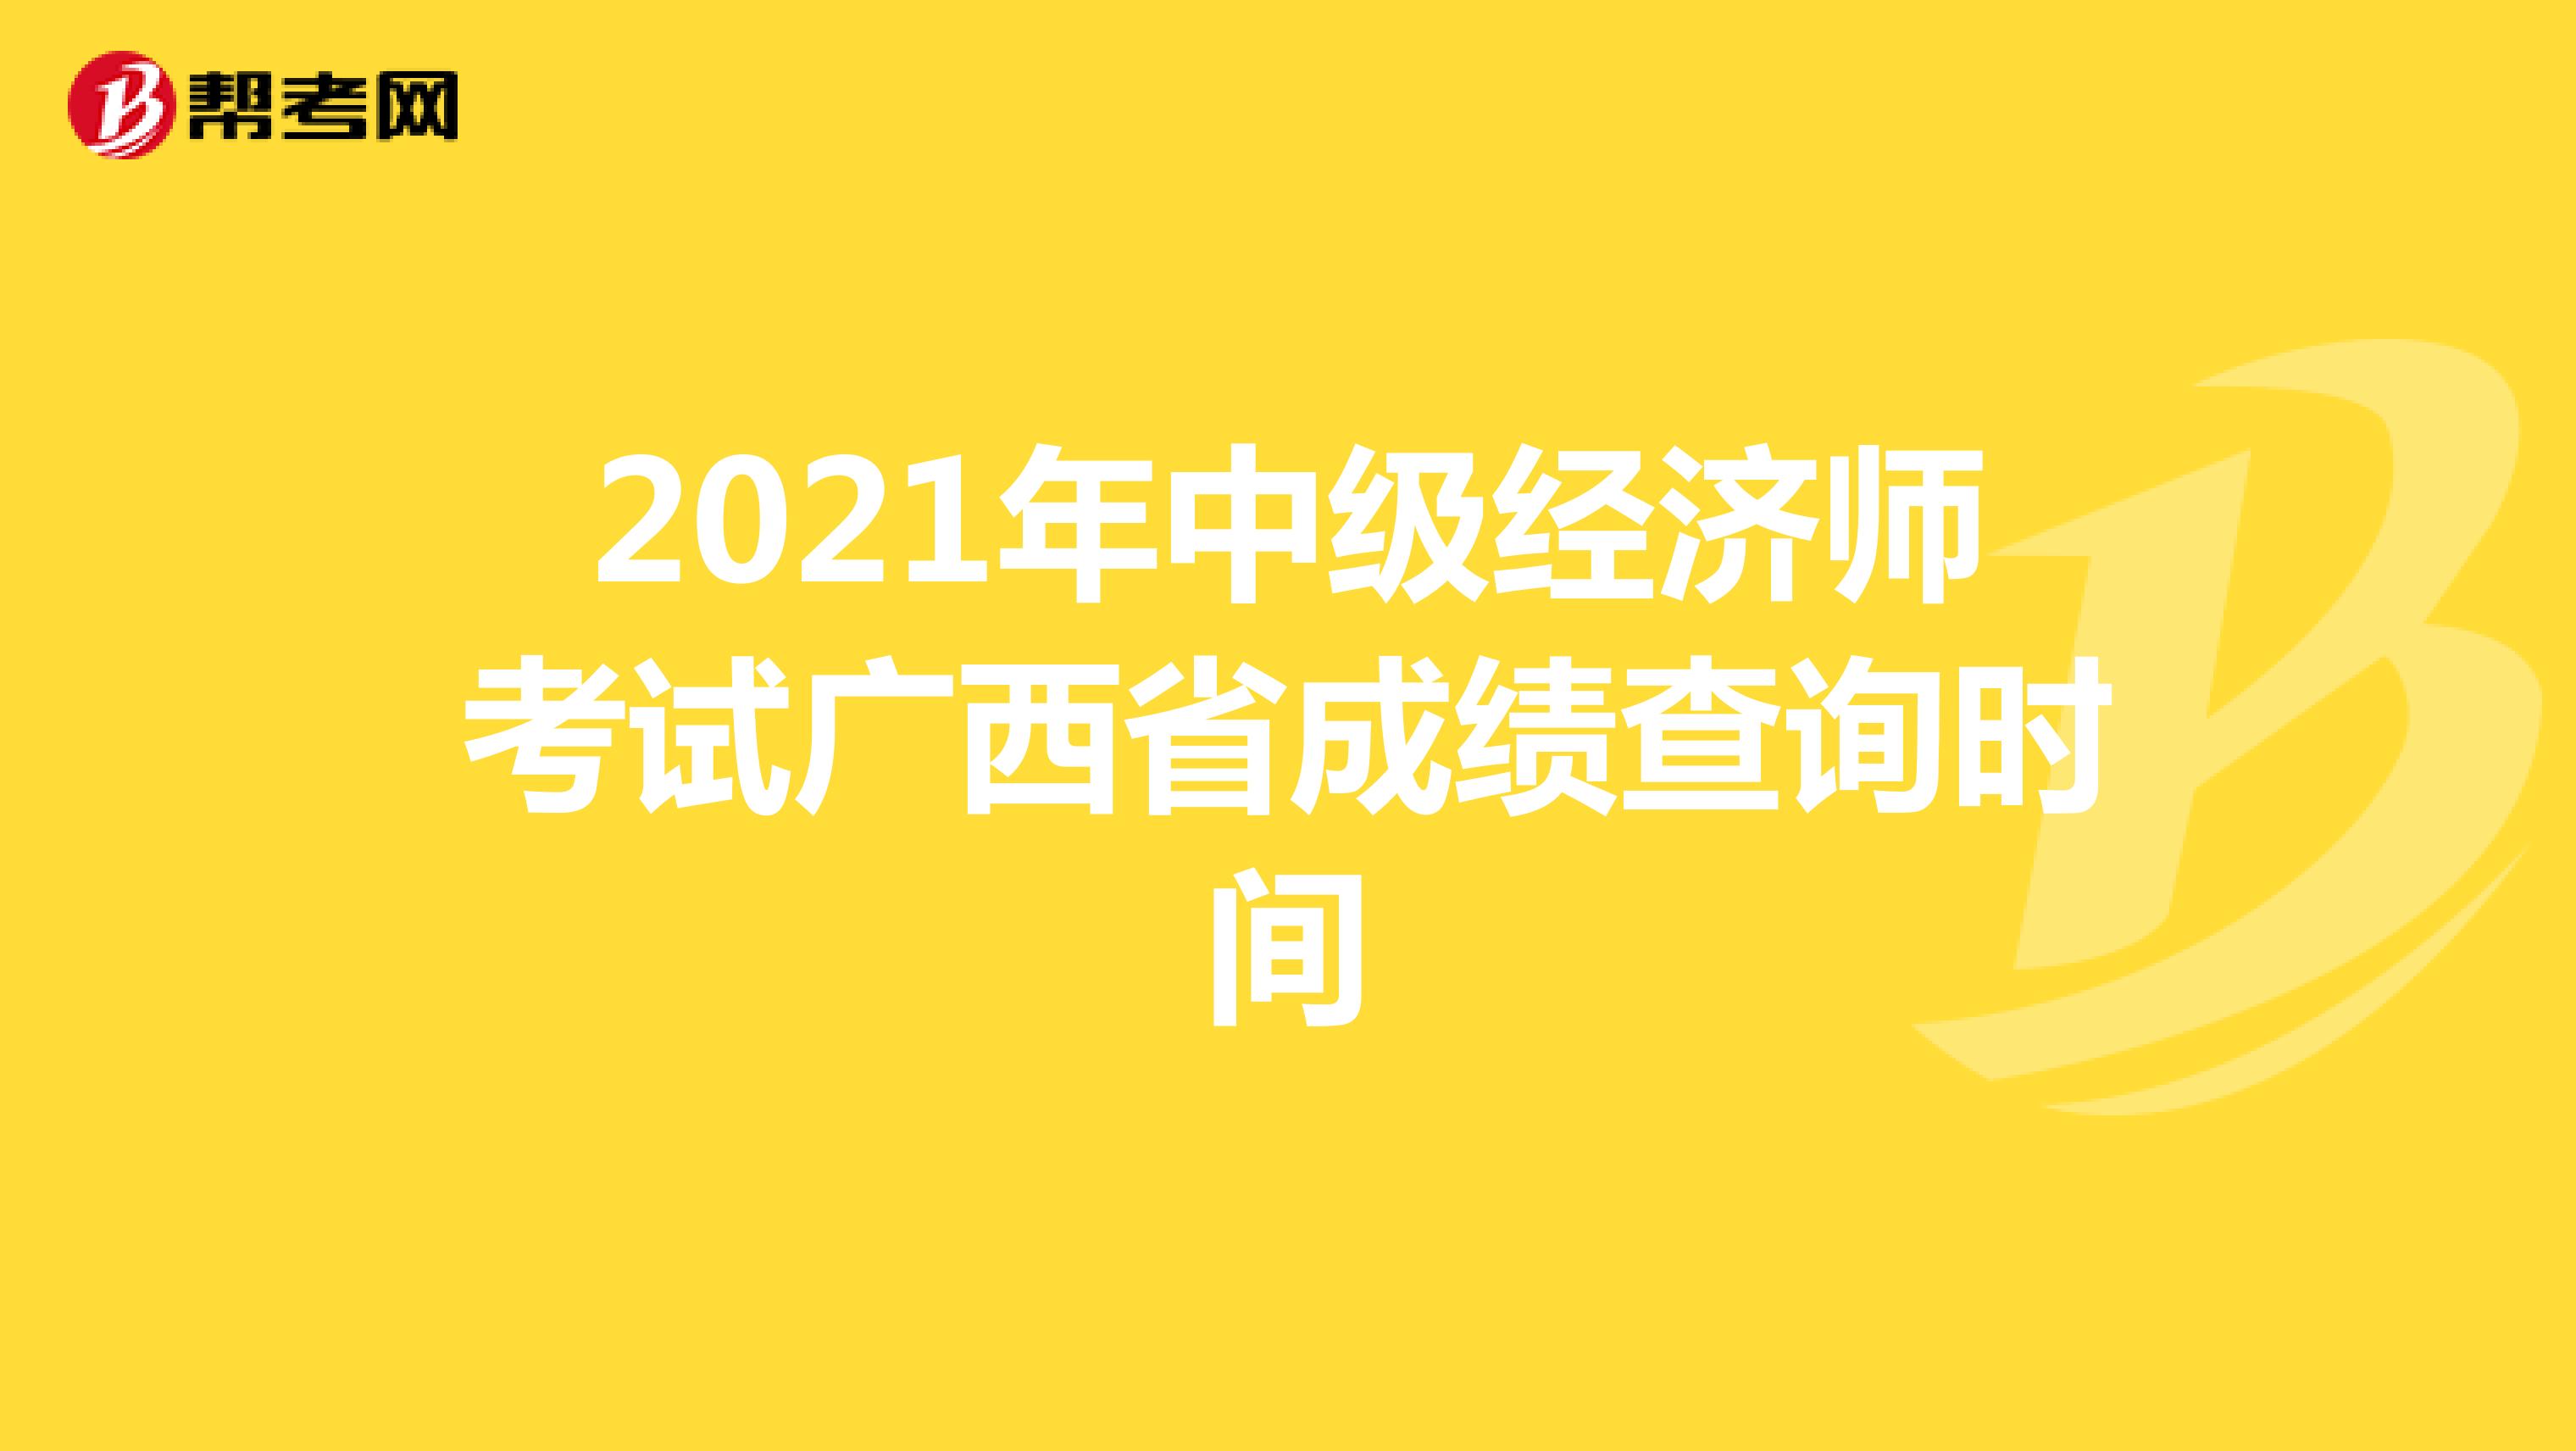 2021年中级经济师考试广西省成绩查询时间